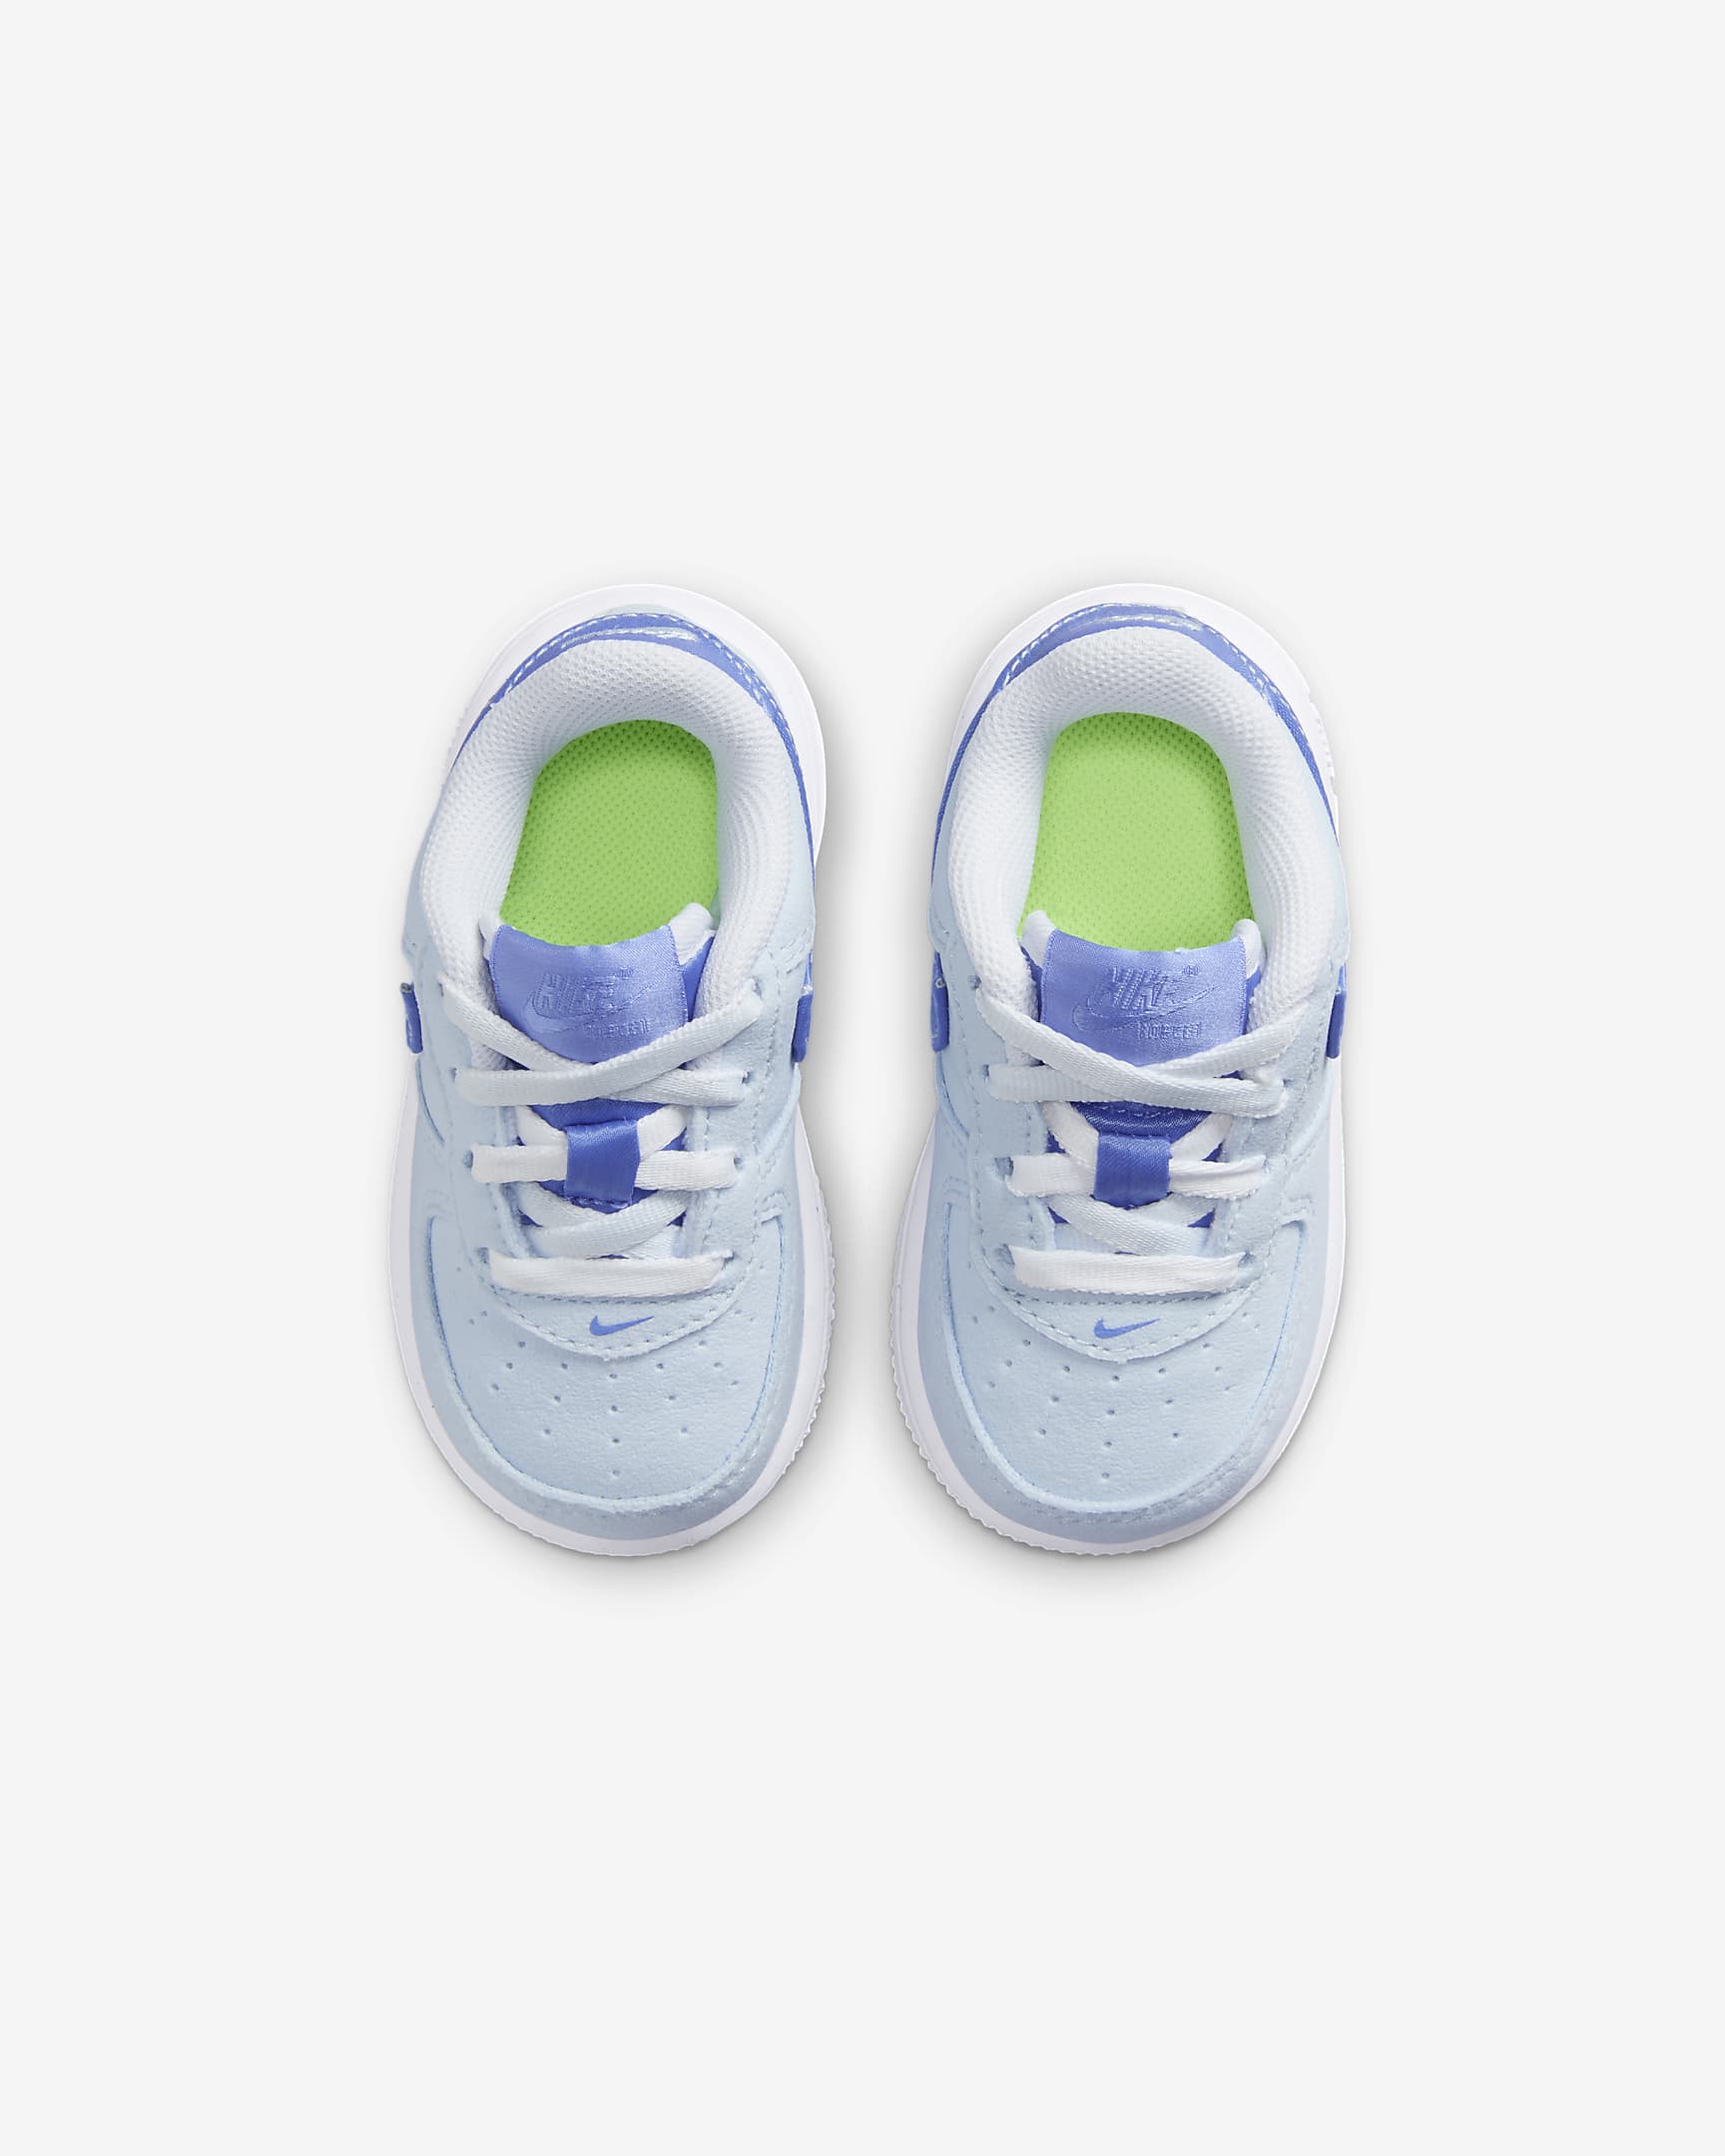 Calzado para bebé e infantil Nike Force 1 LV8. Nike.com